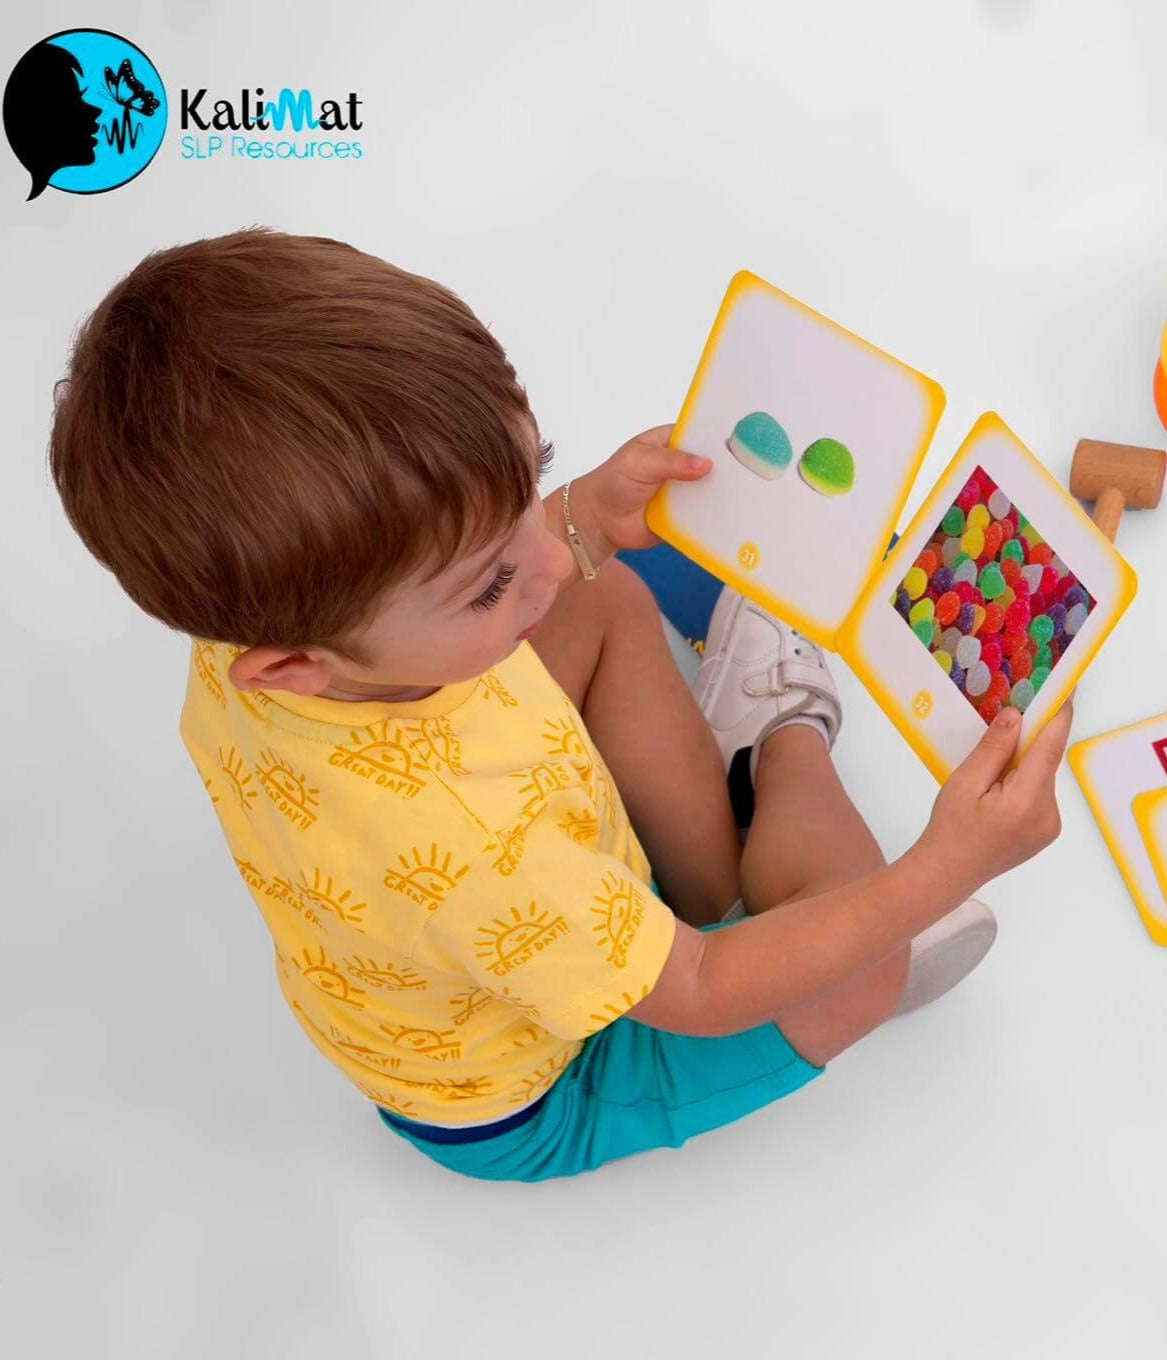  يلعب الأطفال بالصفات والبطاقات التعليمية الأضدادية من متجر كلمات لتعزيز التواصل مع الأطفال